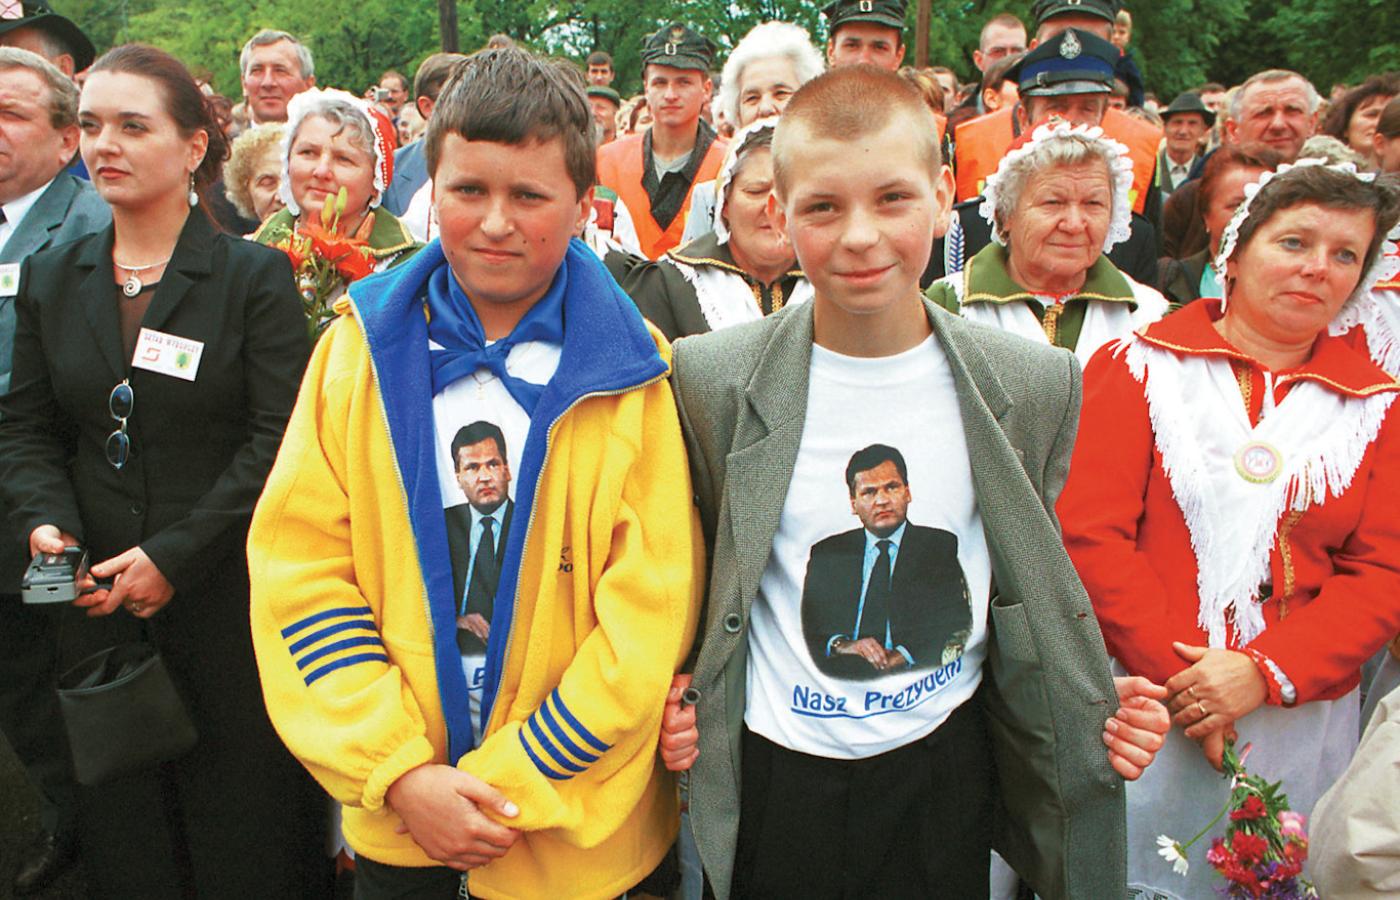 Aleksander Kwaśniewski w 2000 r. wygrał wybory prezydenckie już w pierwszej turze zdobywając prawie 54 proc. poparcia. Na drugim miejscu był Andrzej Olechowski, którego poparło 17,3 proc. wyborców